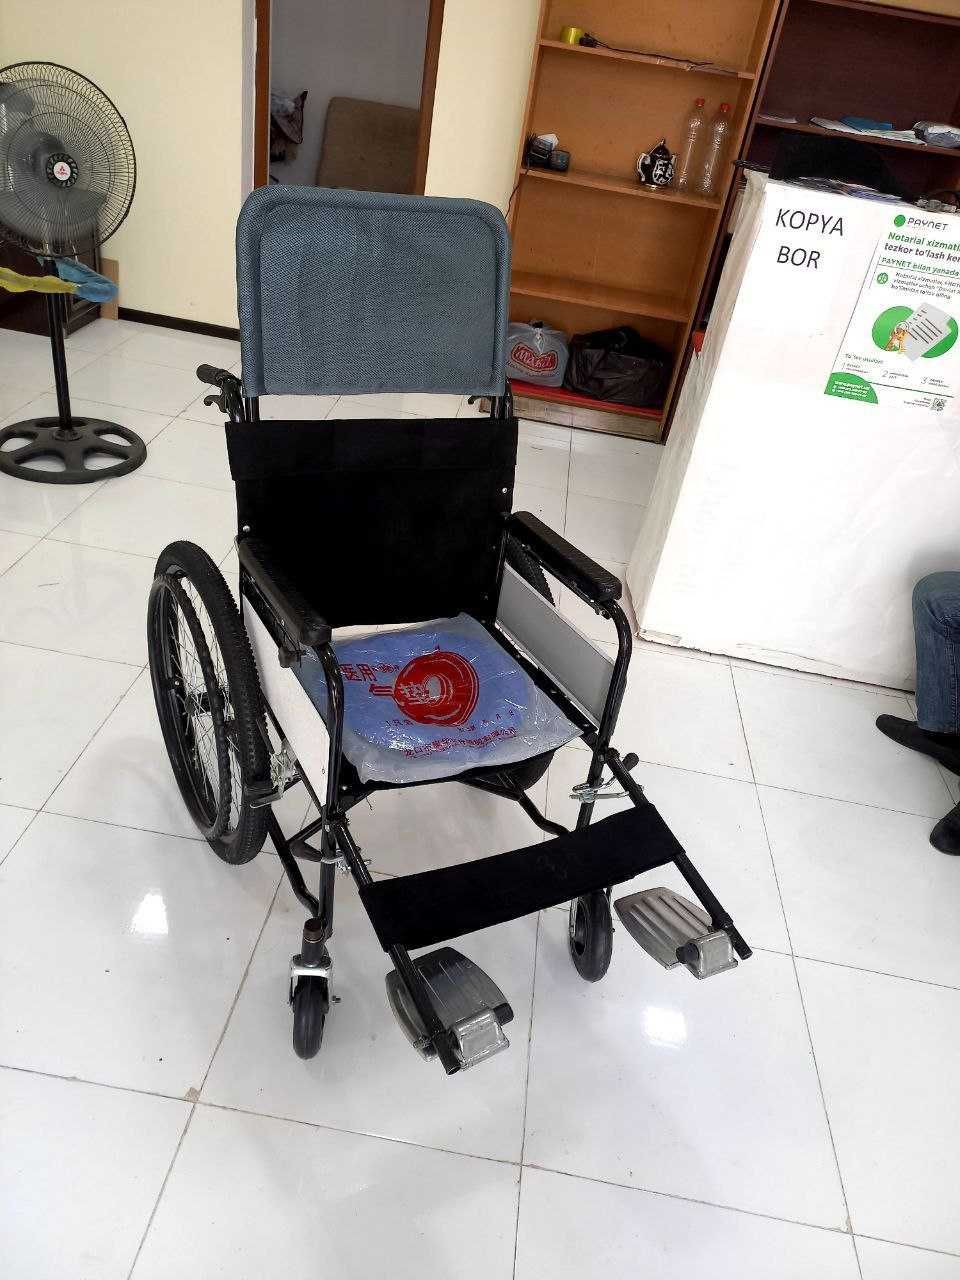 Nogironlar aravachasi инвалидная коляска и другие принадлежности